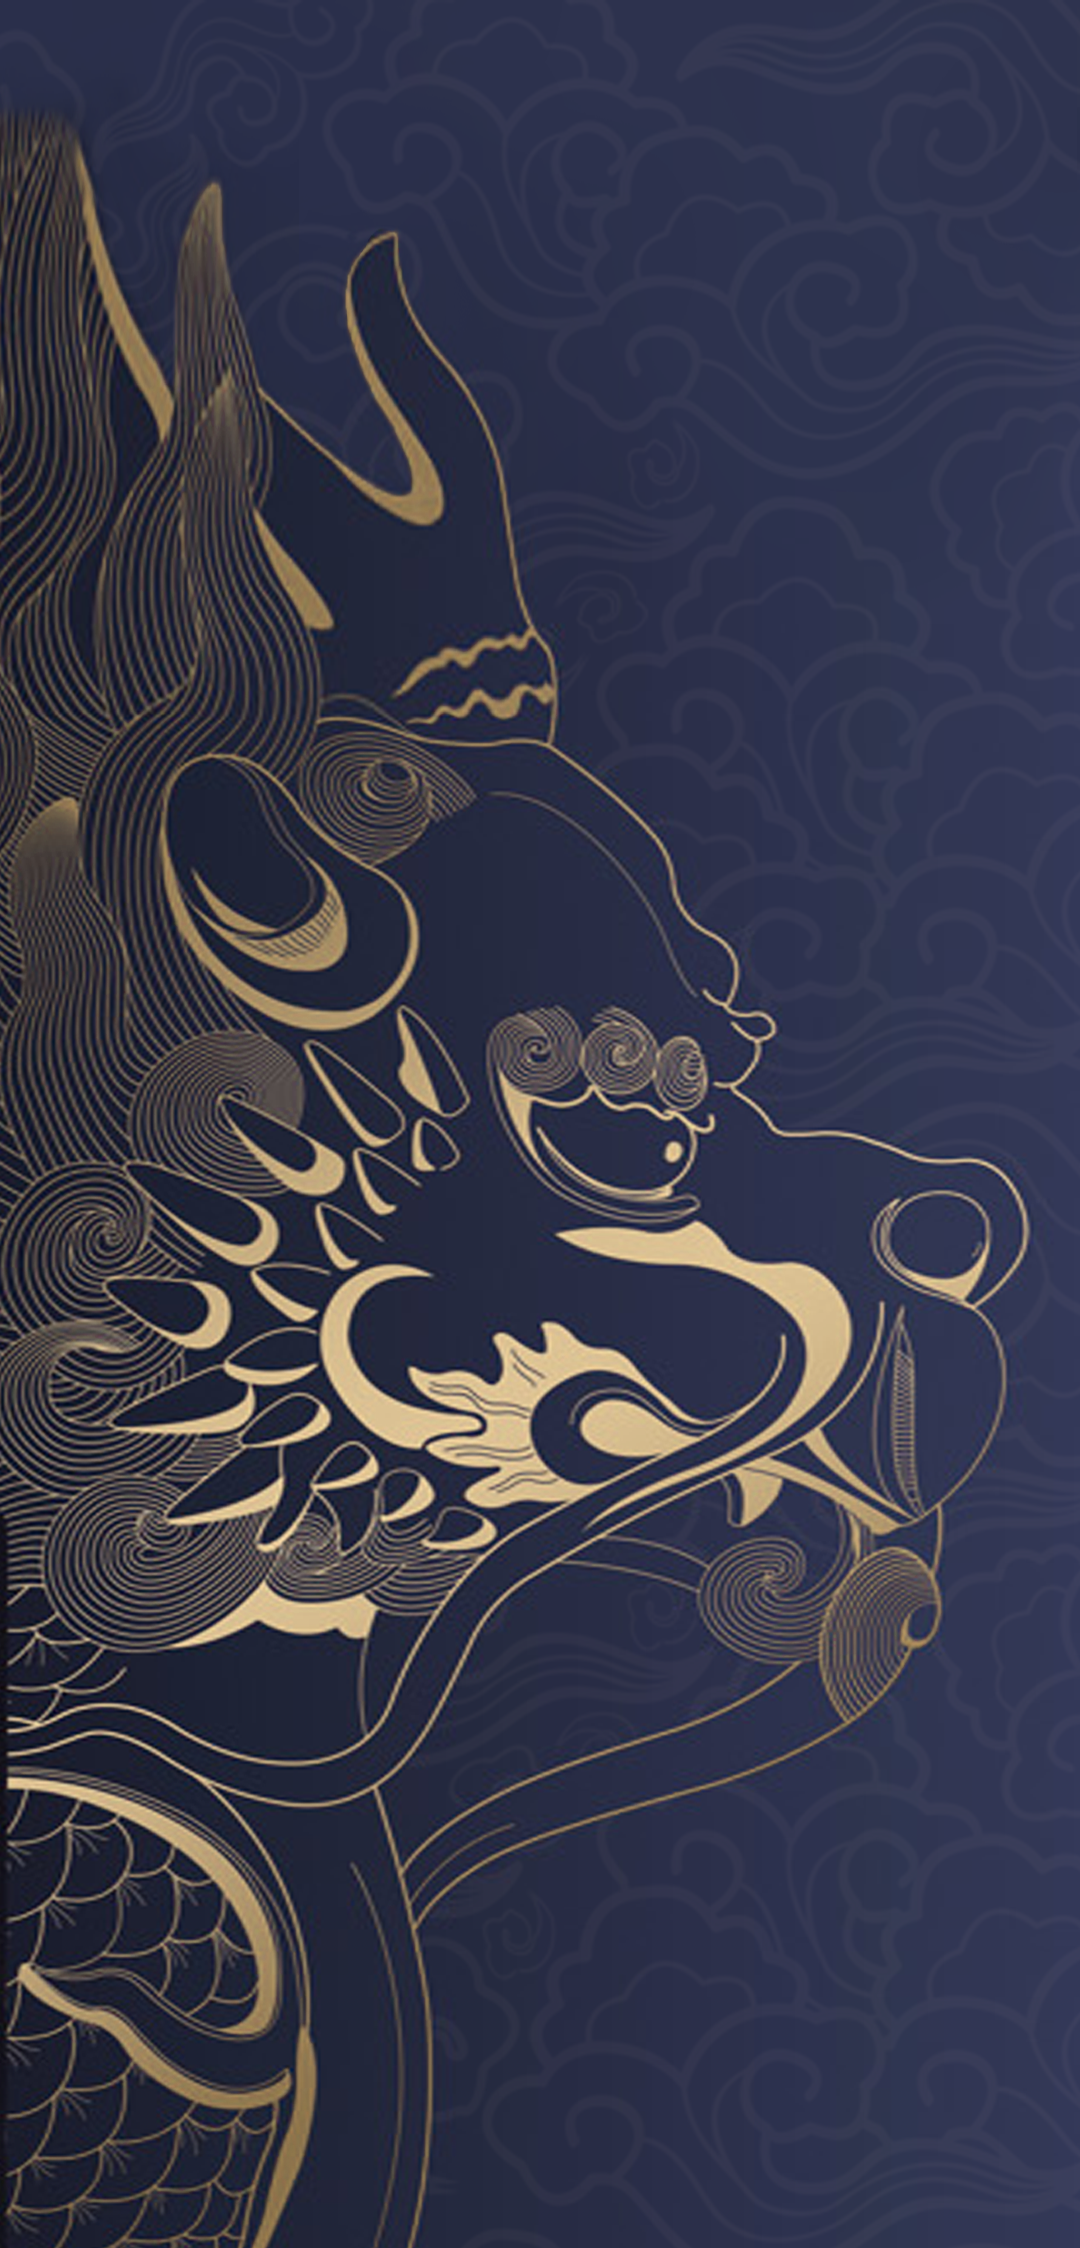 Mi Mix 3 Special Edition Wallpapers - Mi Mix 3 Forbidden City - HD Wallpaper 